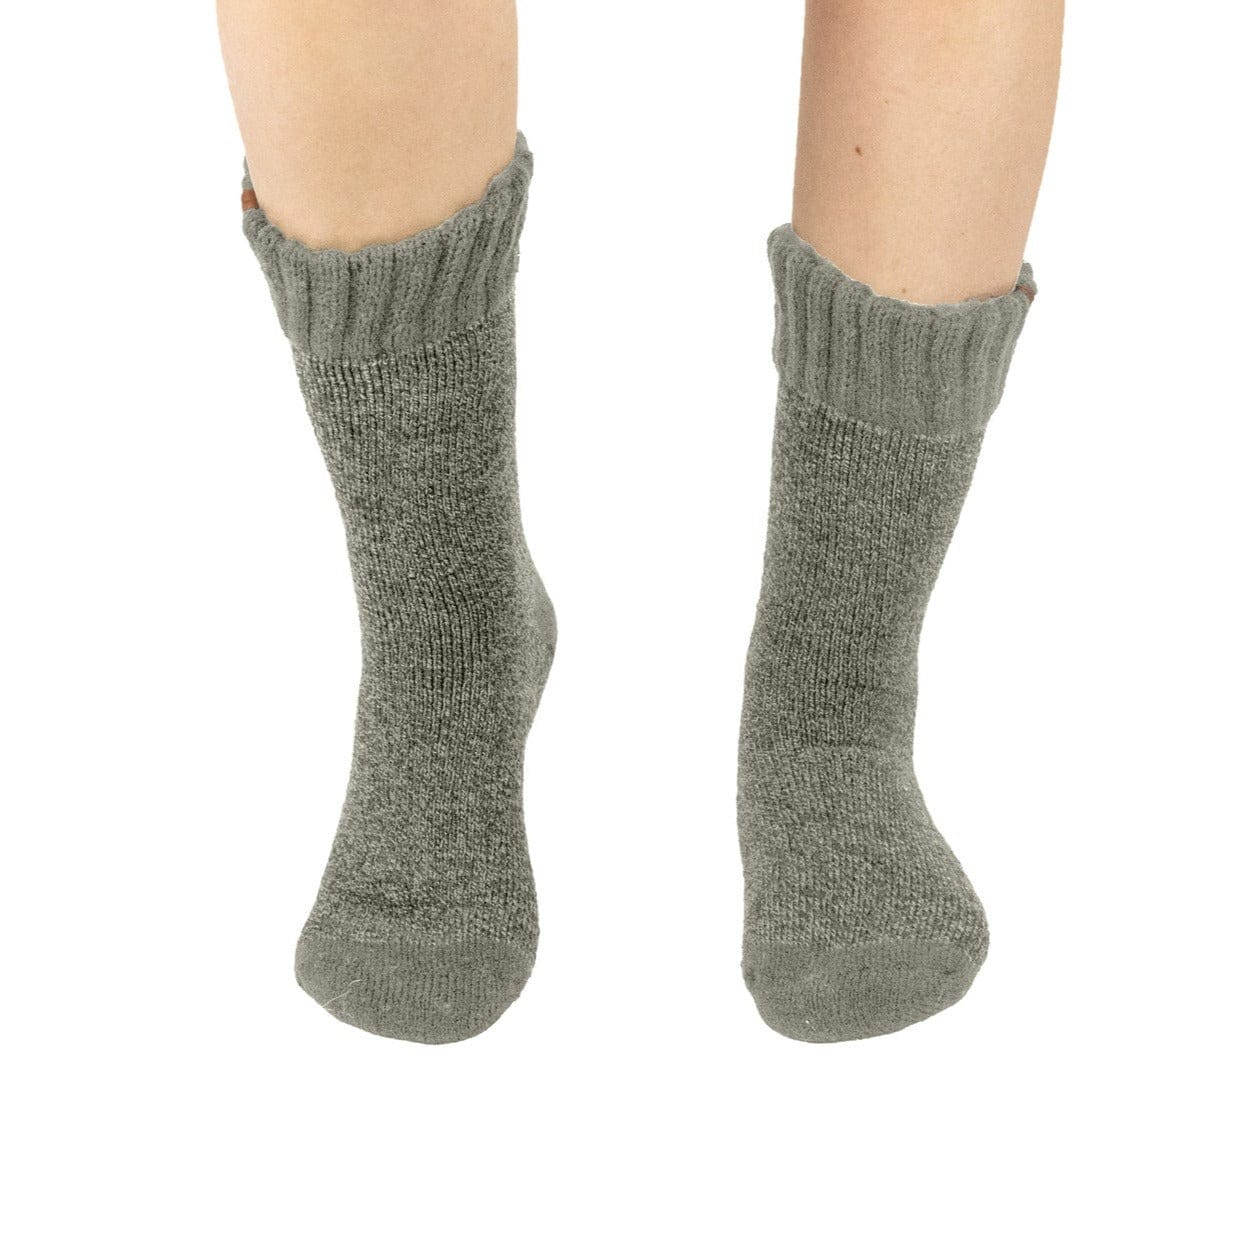 Sage Mist Boot Socks - Adult Short